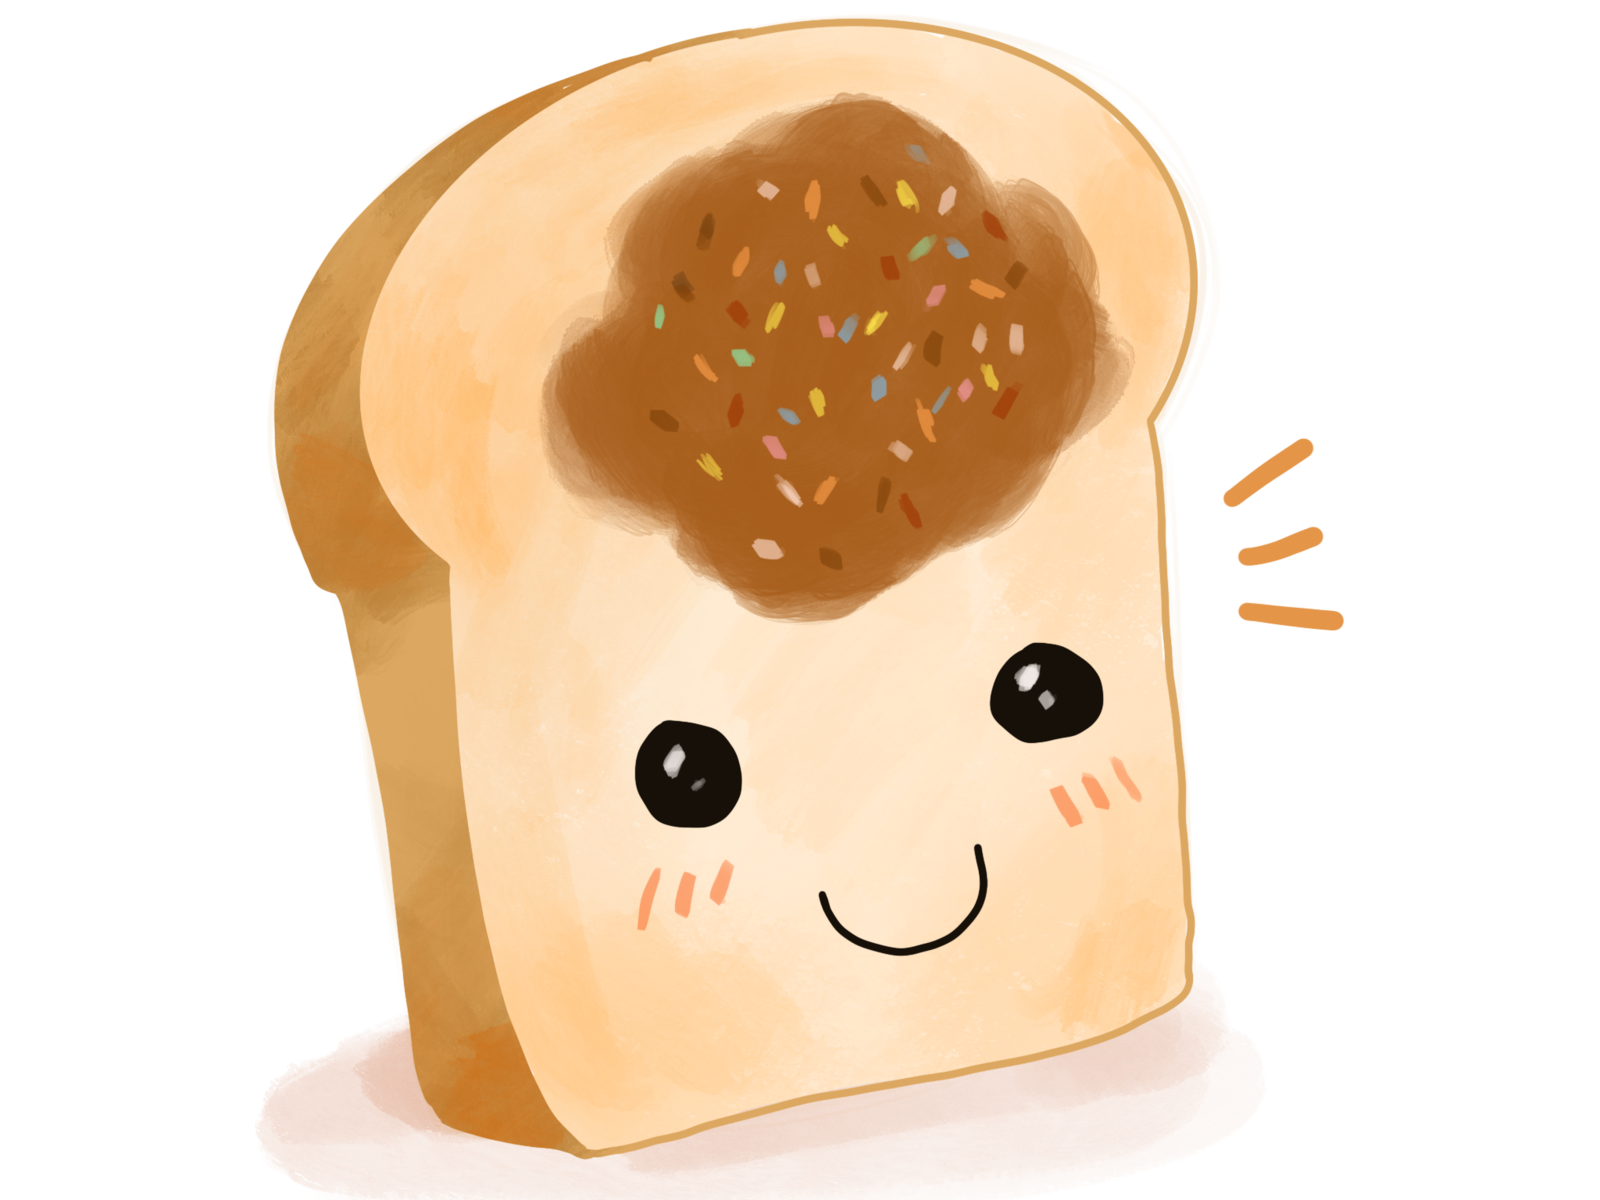 Anime Bread by SSerenitytheOtaku on DeviantArt